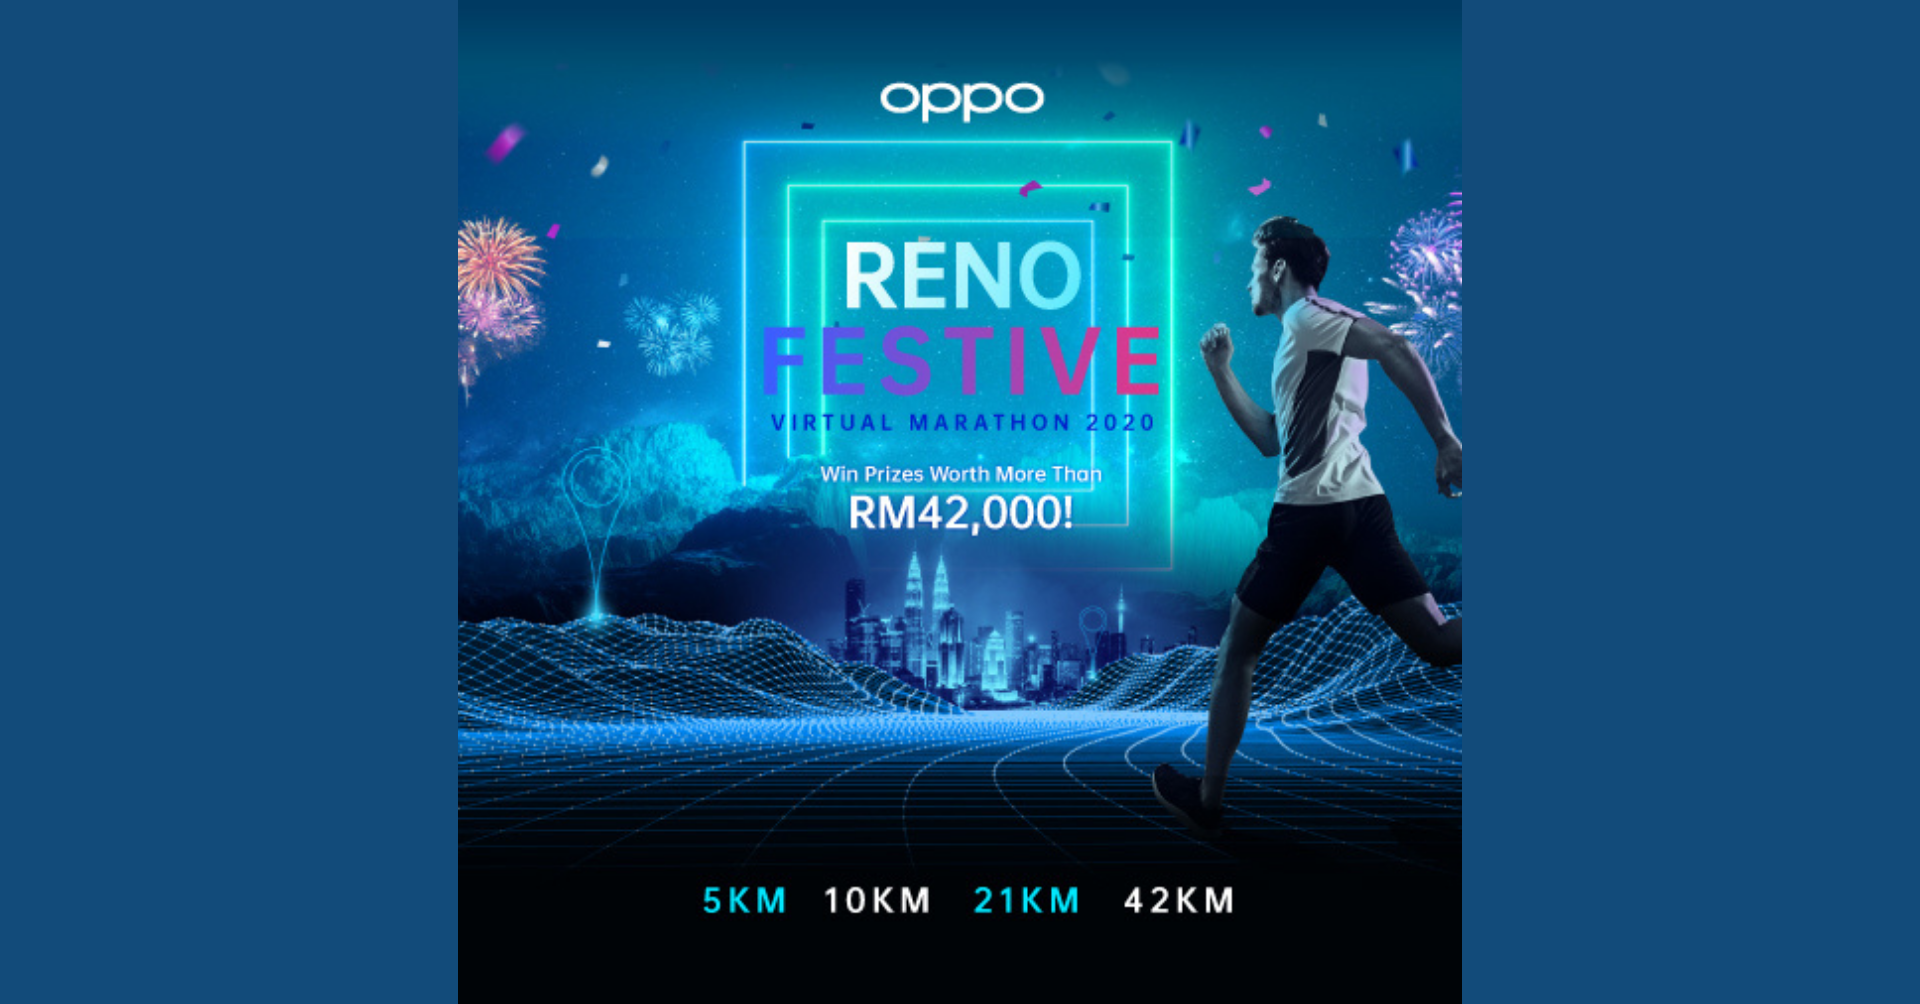 Logo of OPPO Reno Festive Virtual Marathon 2020